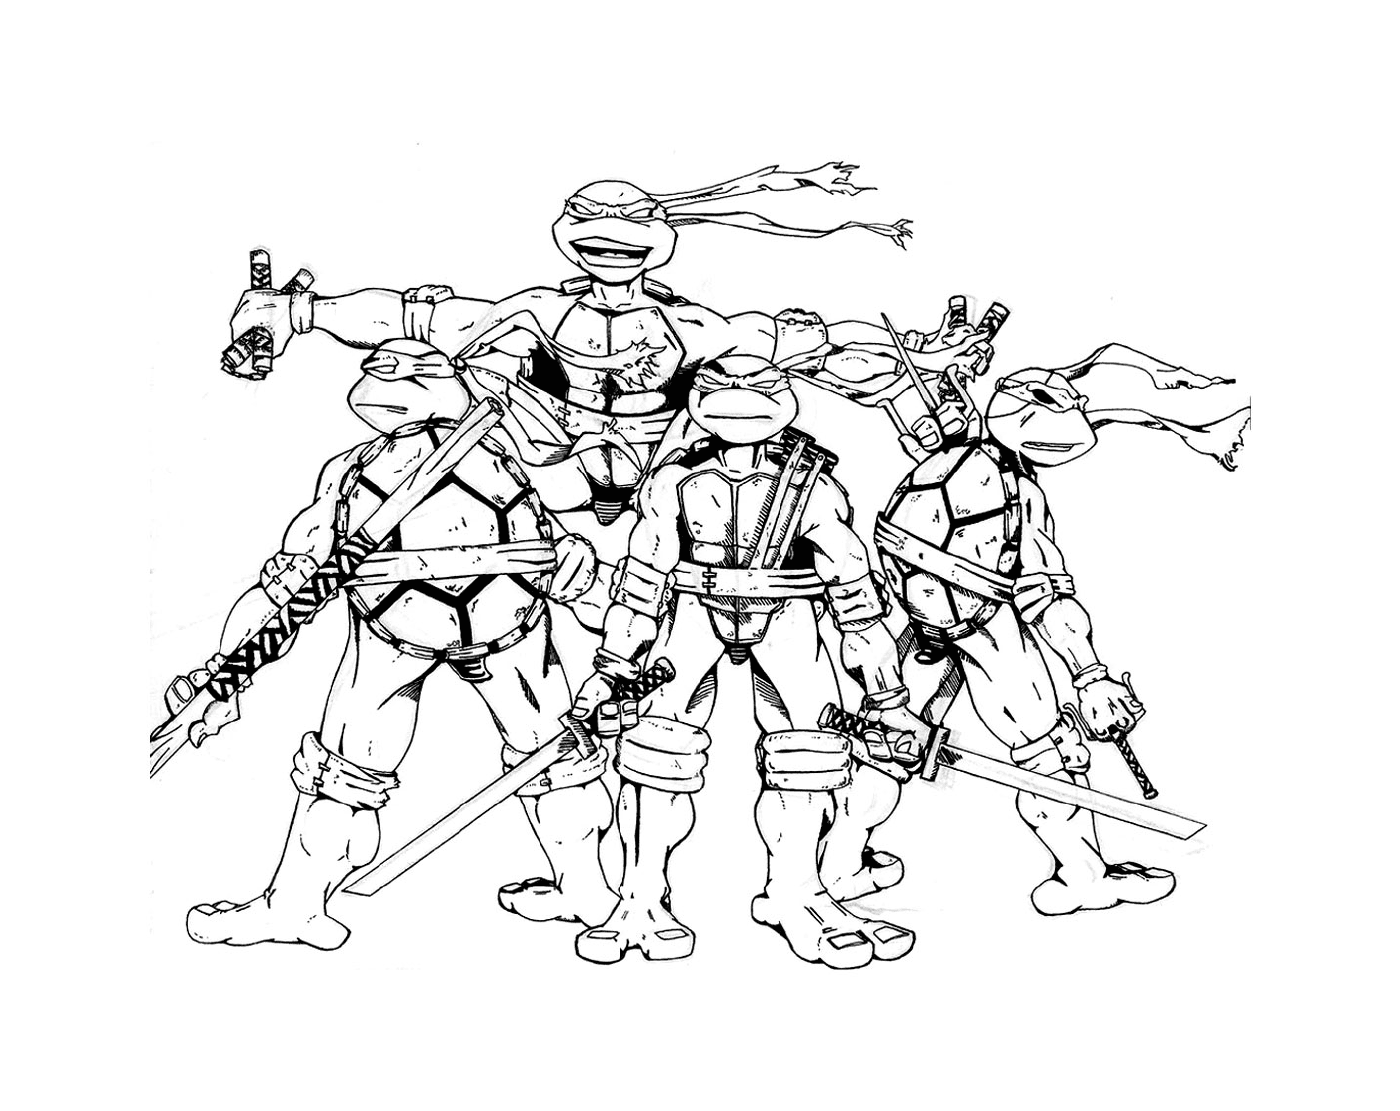   Groupe de tortues ninjas unies 